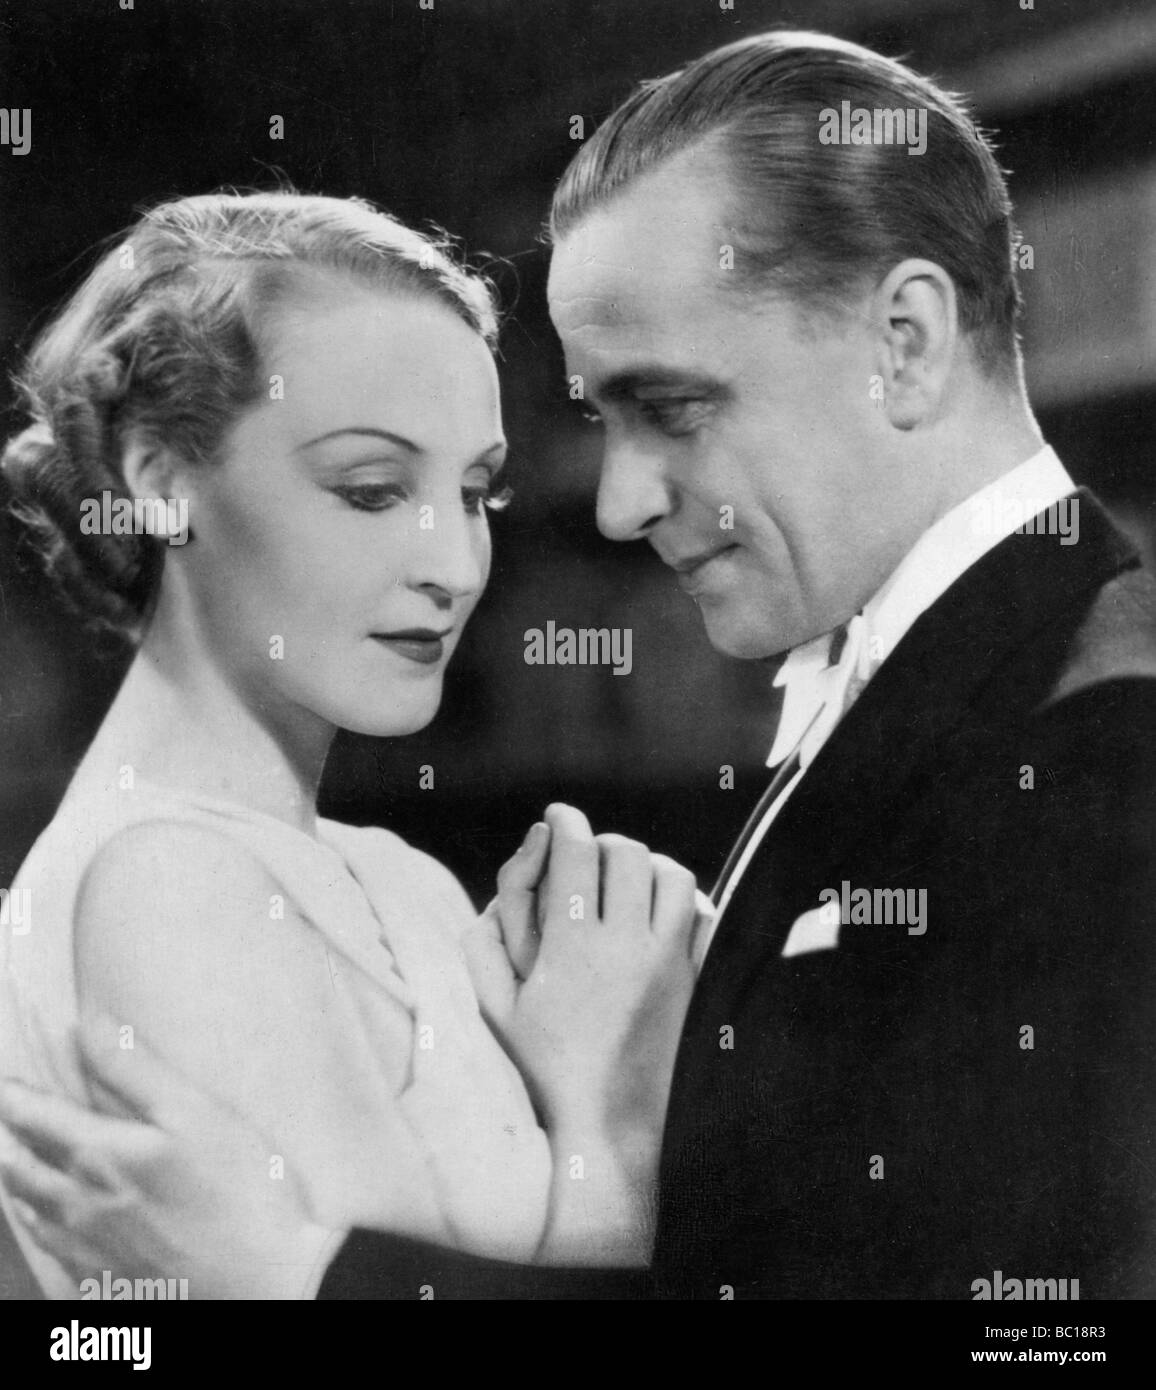 Brigitte Helm and Karl Ludwig Diehl, German film actors, 1930s. Stock Foto